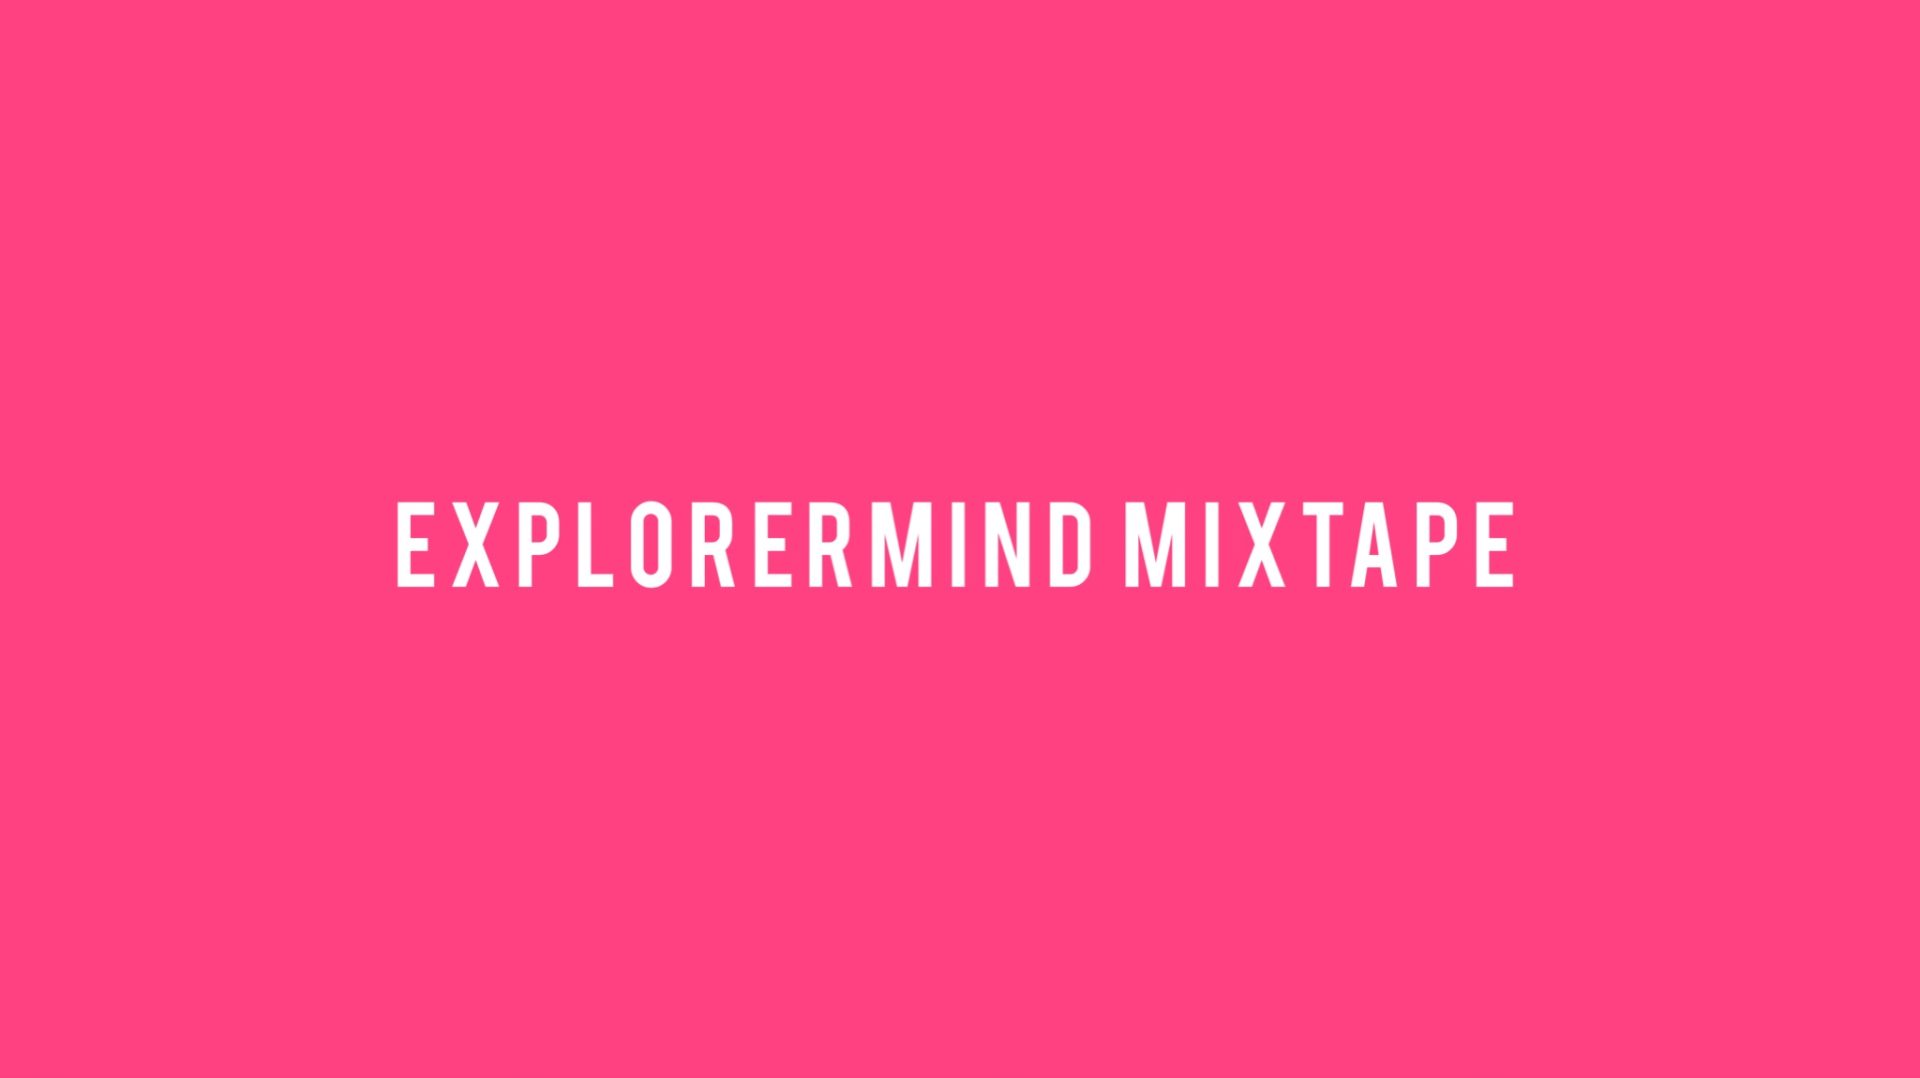 Explorermind mixtape